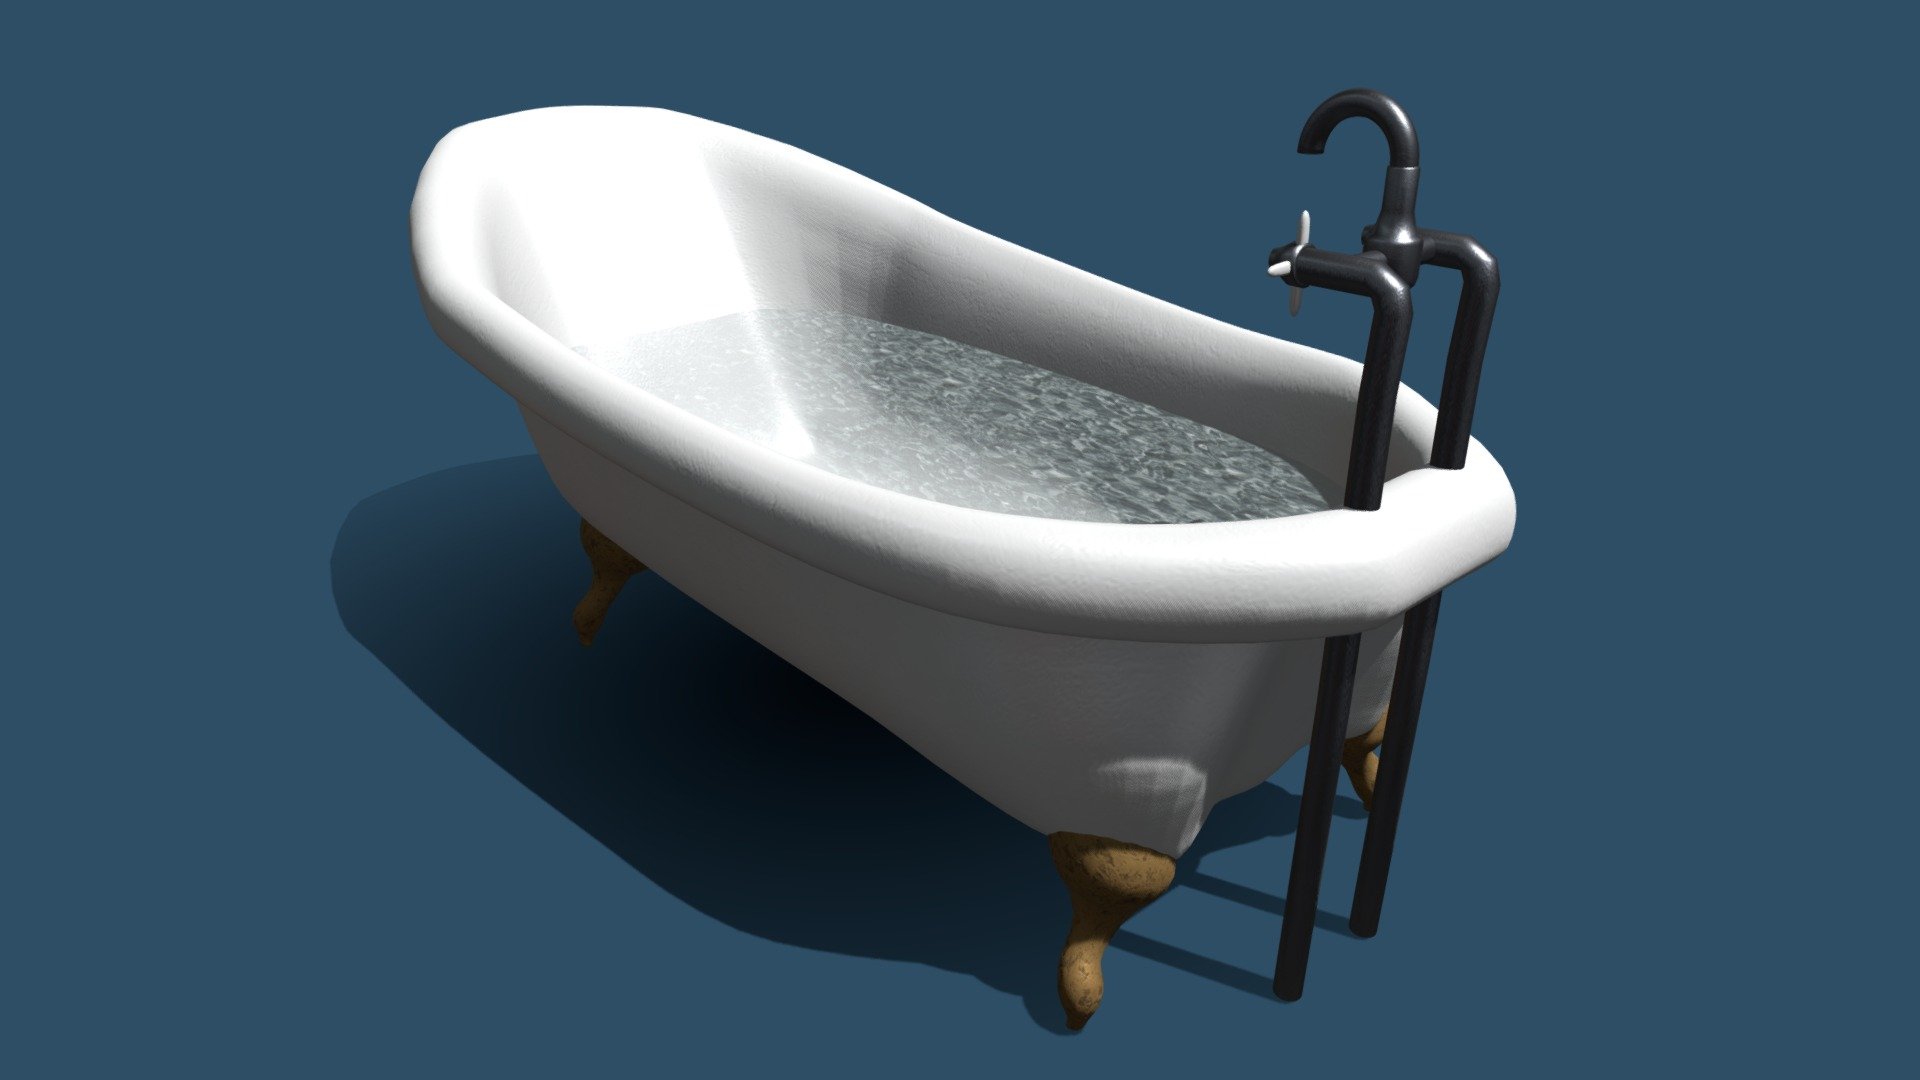 Bath 3D Models for Download